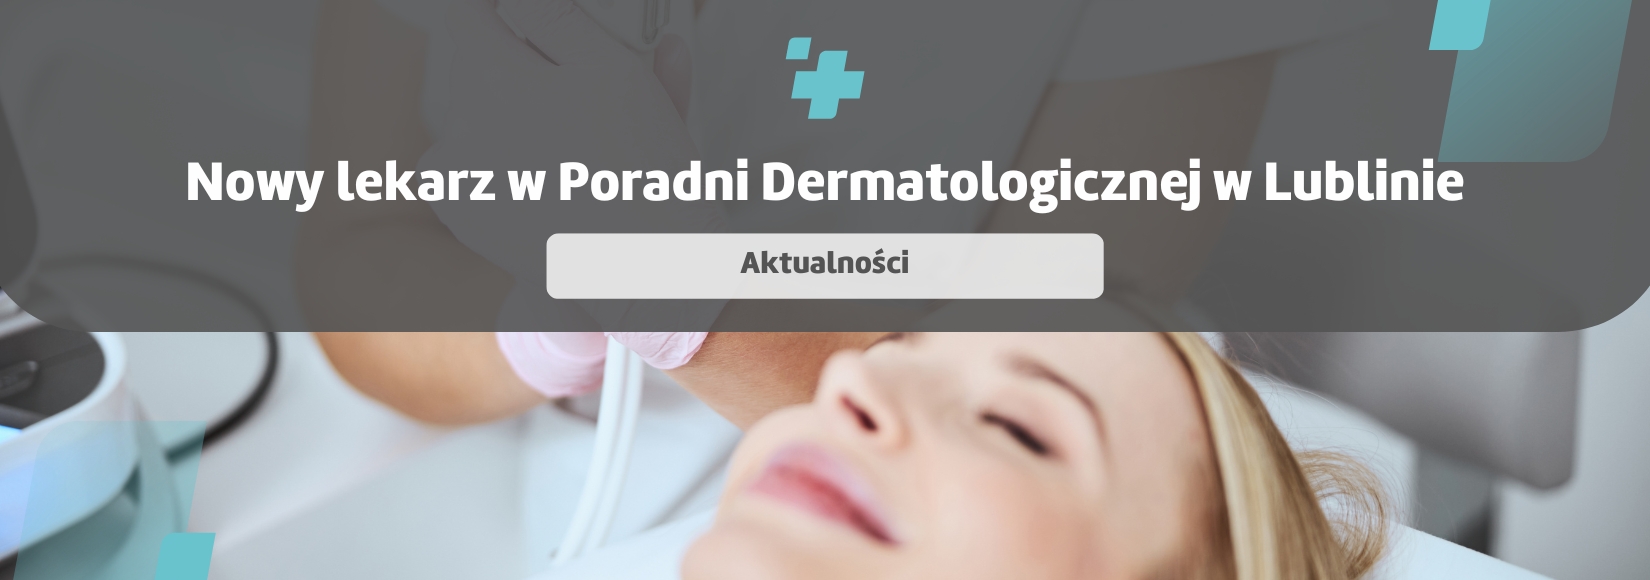 Nowy lekarz w Poradni Dermatologicznej w Lublinie 